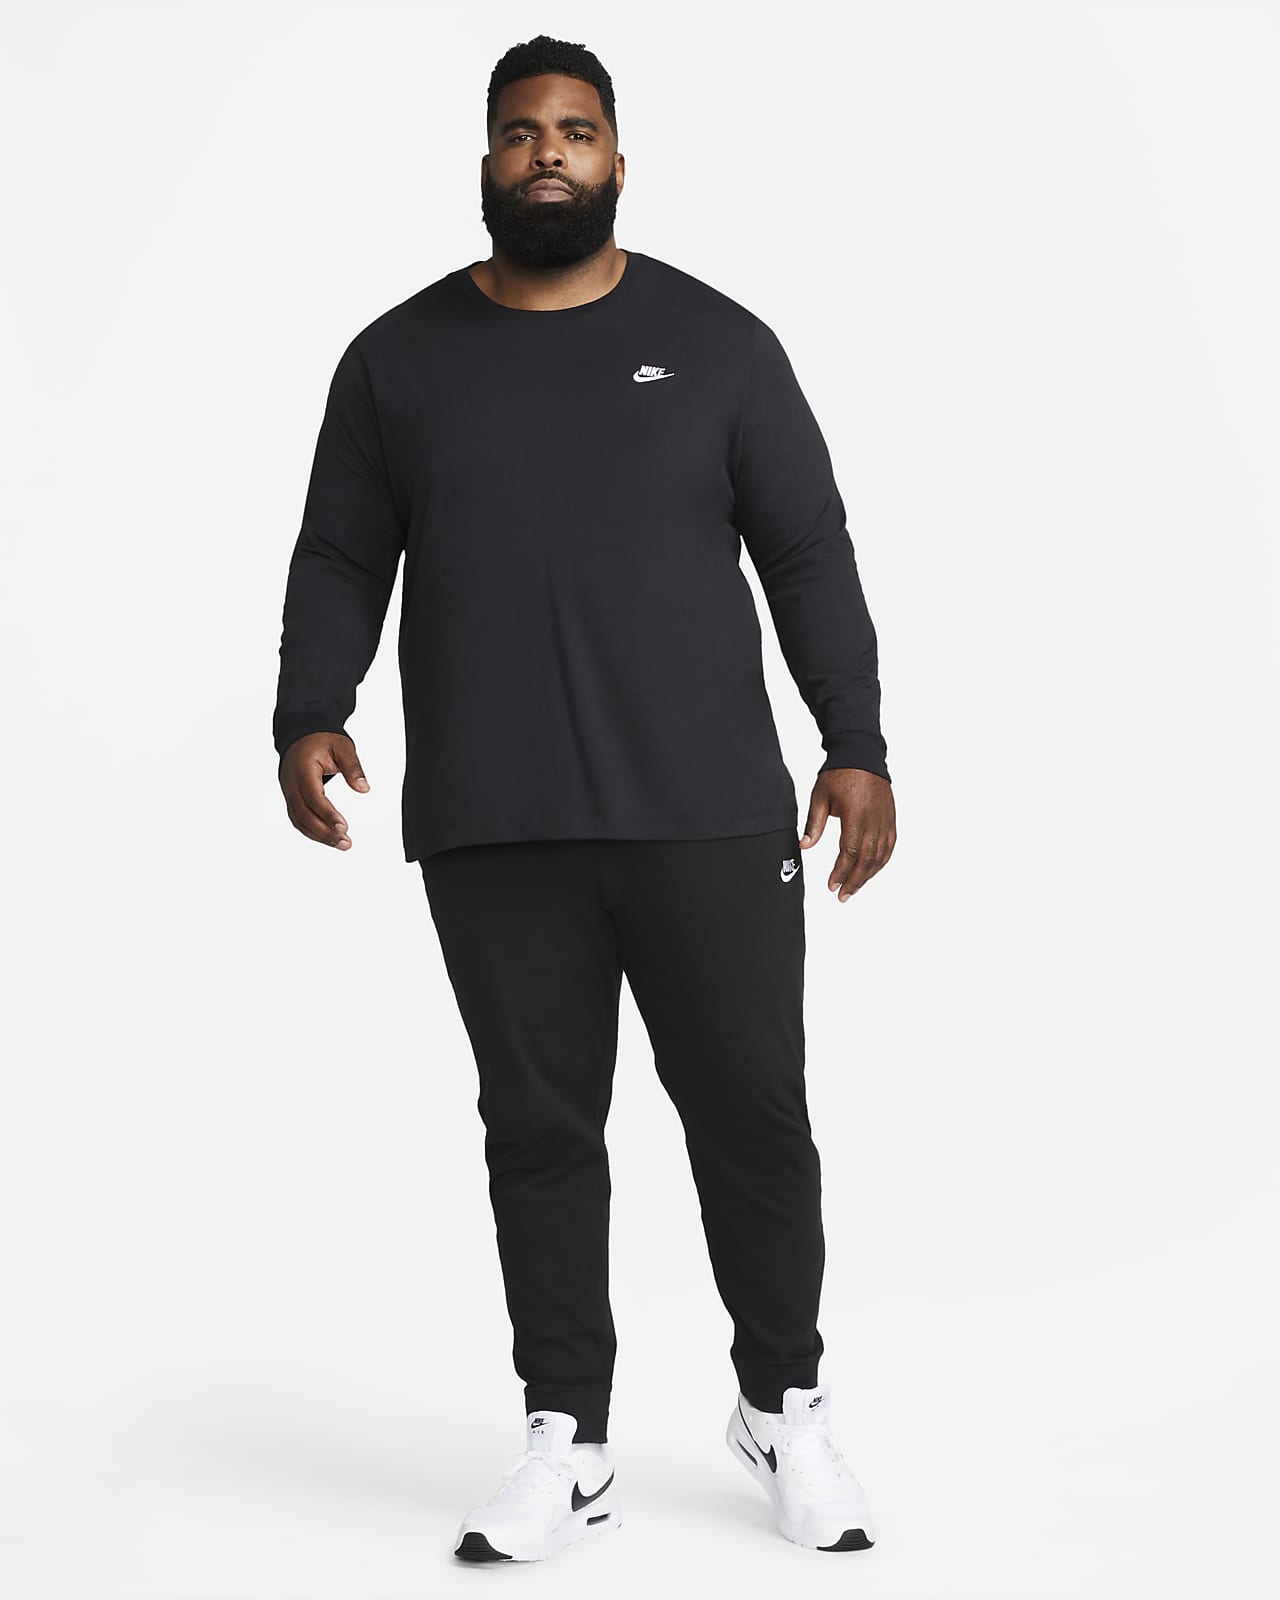 Nike Sportswear Easy Joggers in Black & White